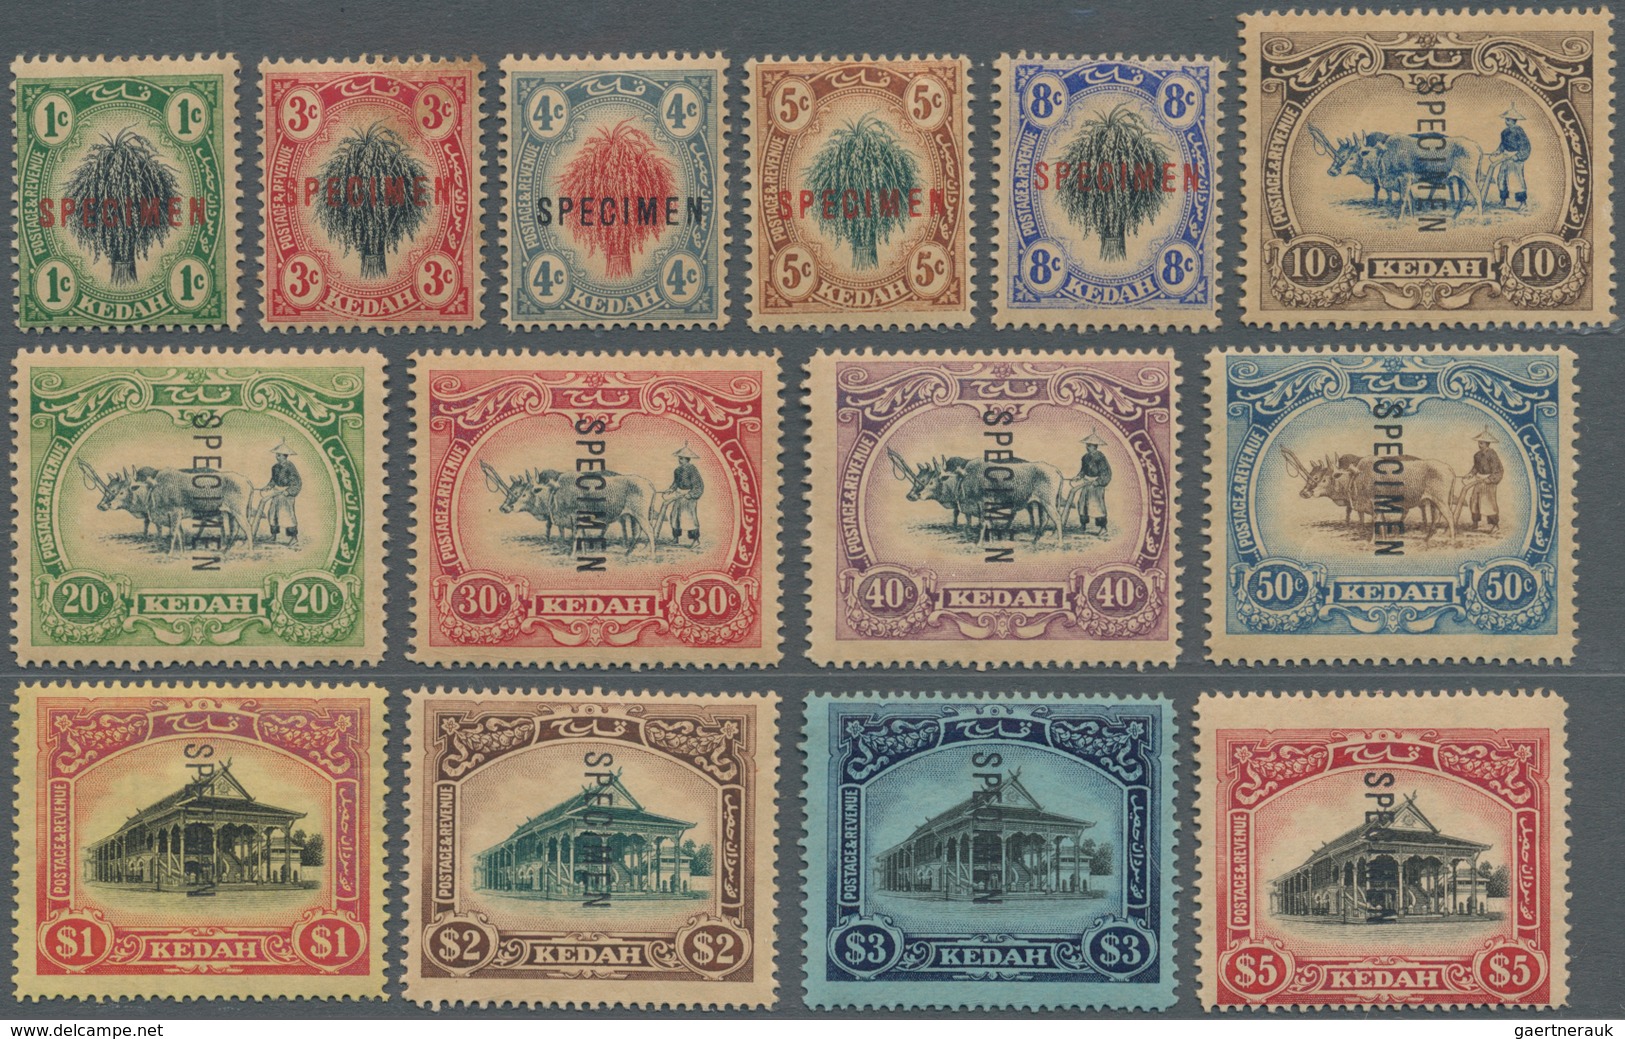 Malaiische Staaten - Kedah: 1912 Complete Set To $5 Surcharged "SPECIMEN" , Wmk Crown CA, With More - Kedah